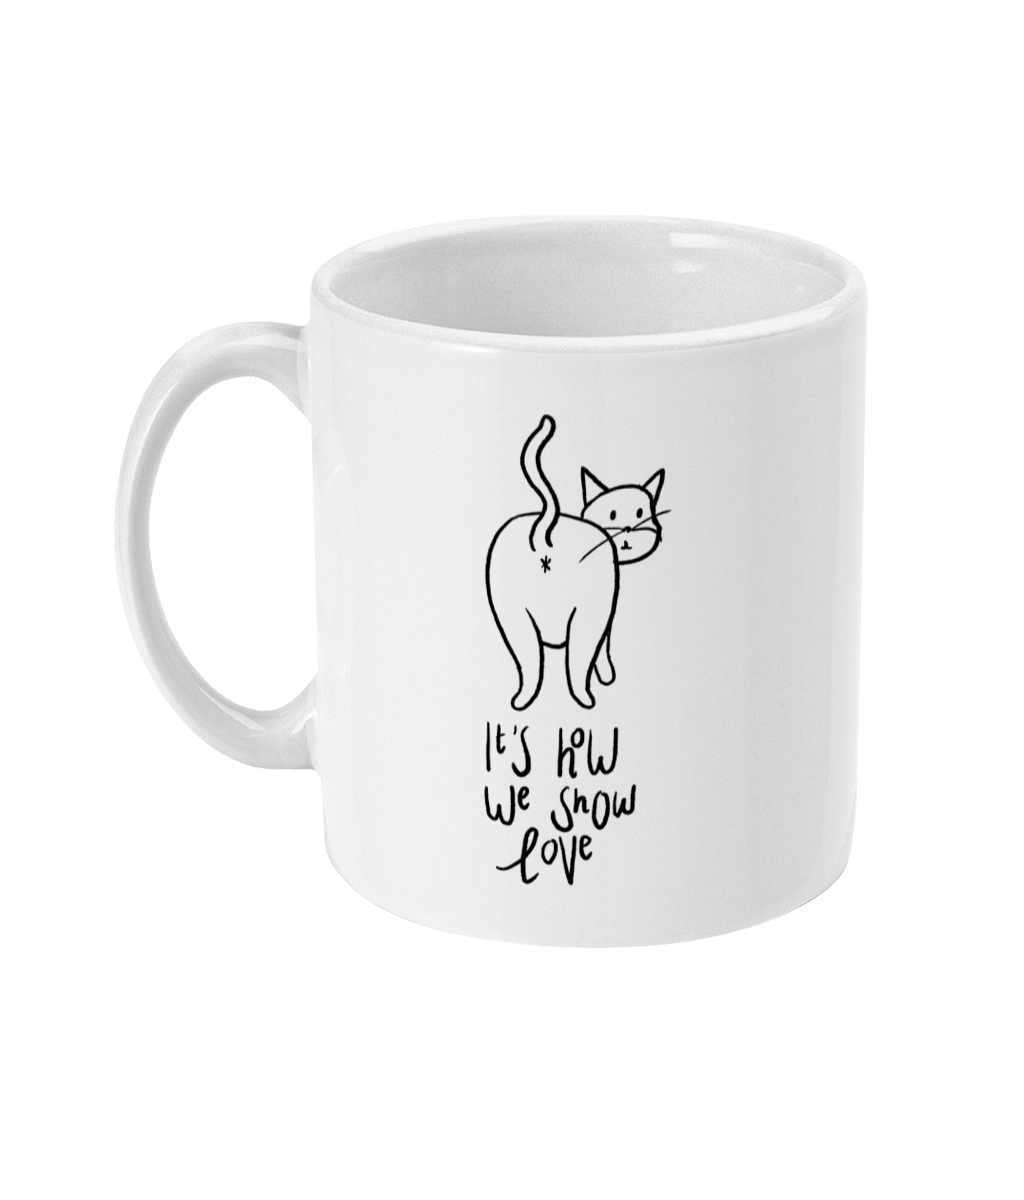 Mom I Love You A Hole Lot - Cat Butt Coffee Mug